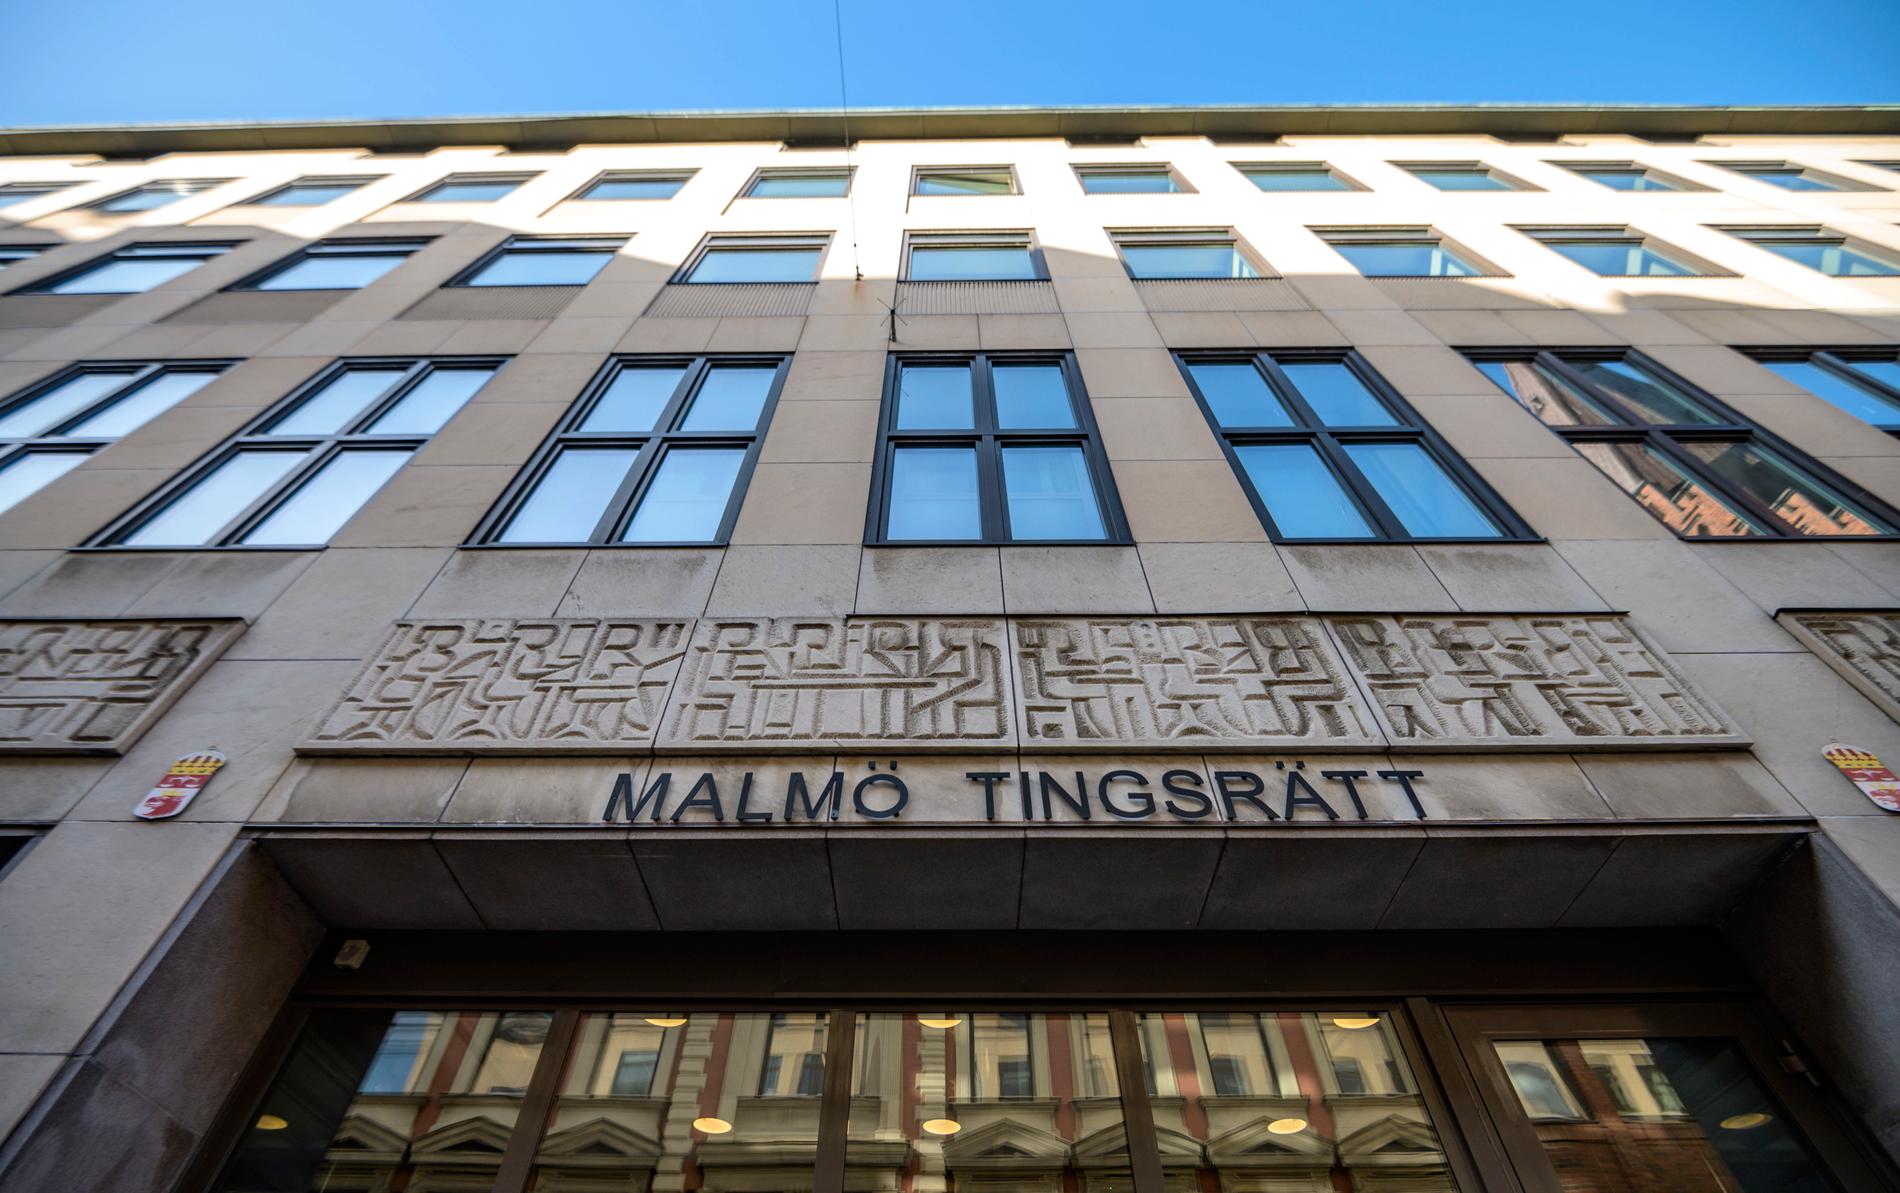 En man åtalas i Malmö tingsrätt för att ha utsatt en kvinna för våldtäkt på ett hotellrum, där kvinnan sedan enligt åtalet hölls kvar och misshandlades. Arkivbild.